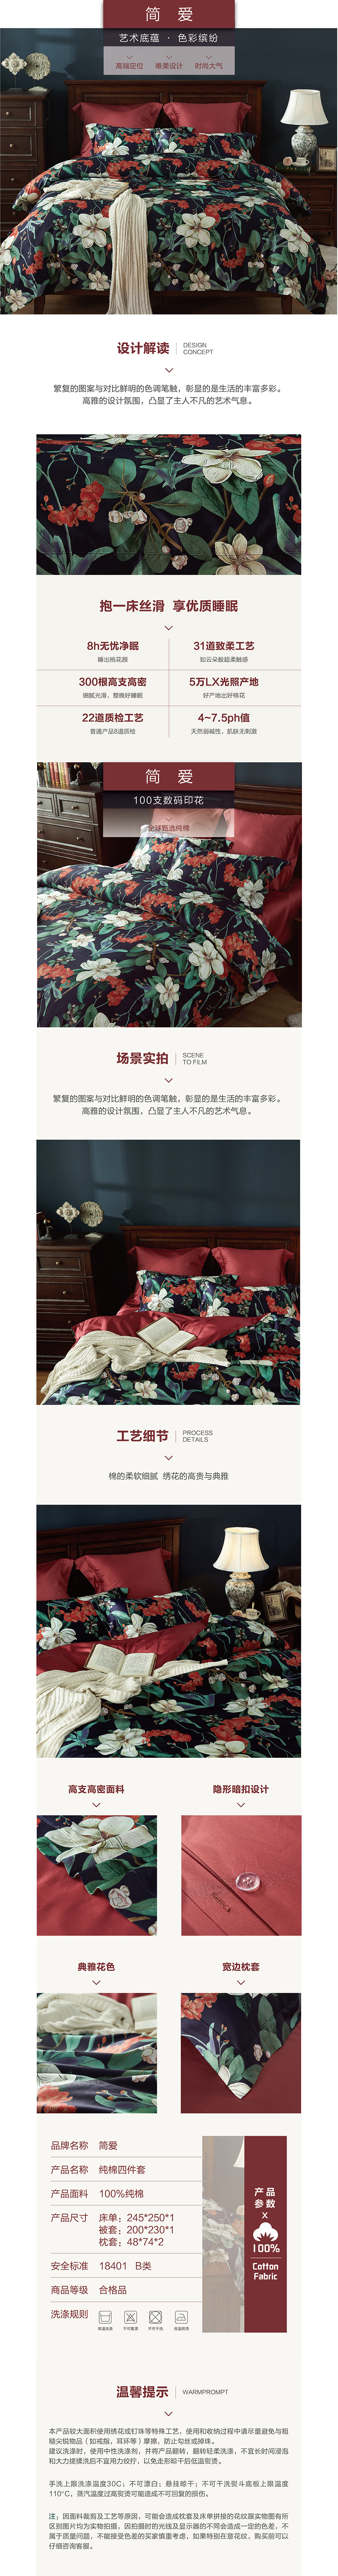 床上用品 纯棉四件套 蕾丝工艺 数码印花系列 简爱